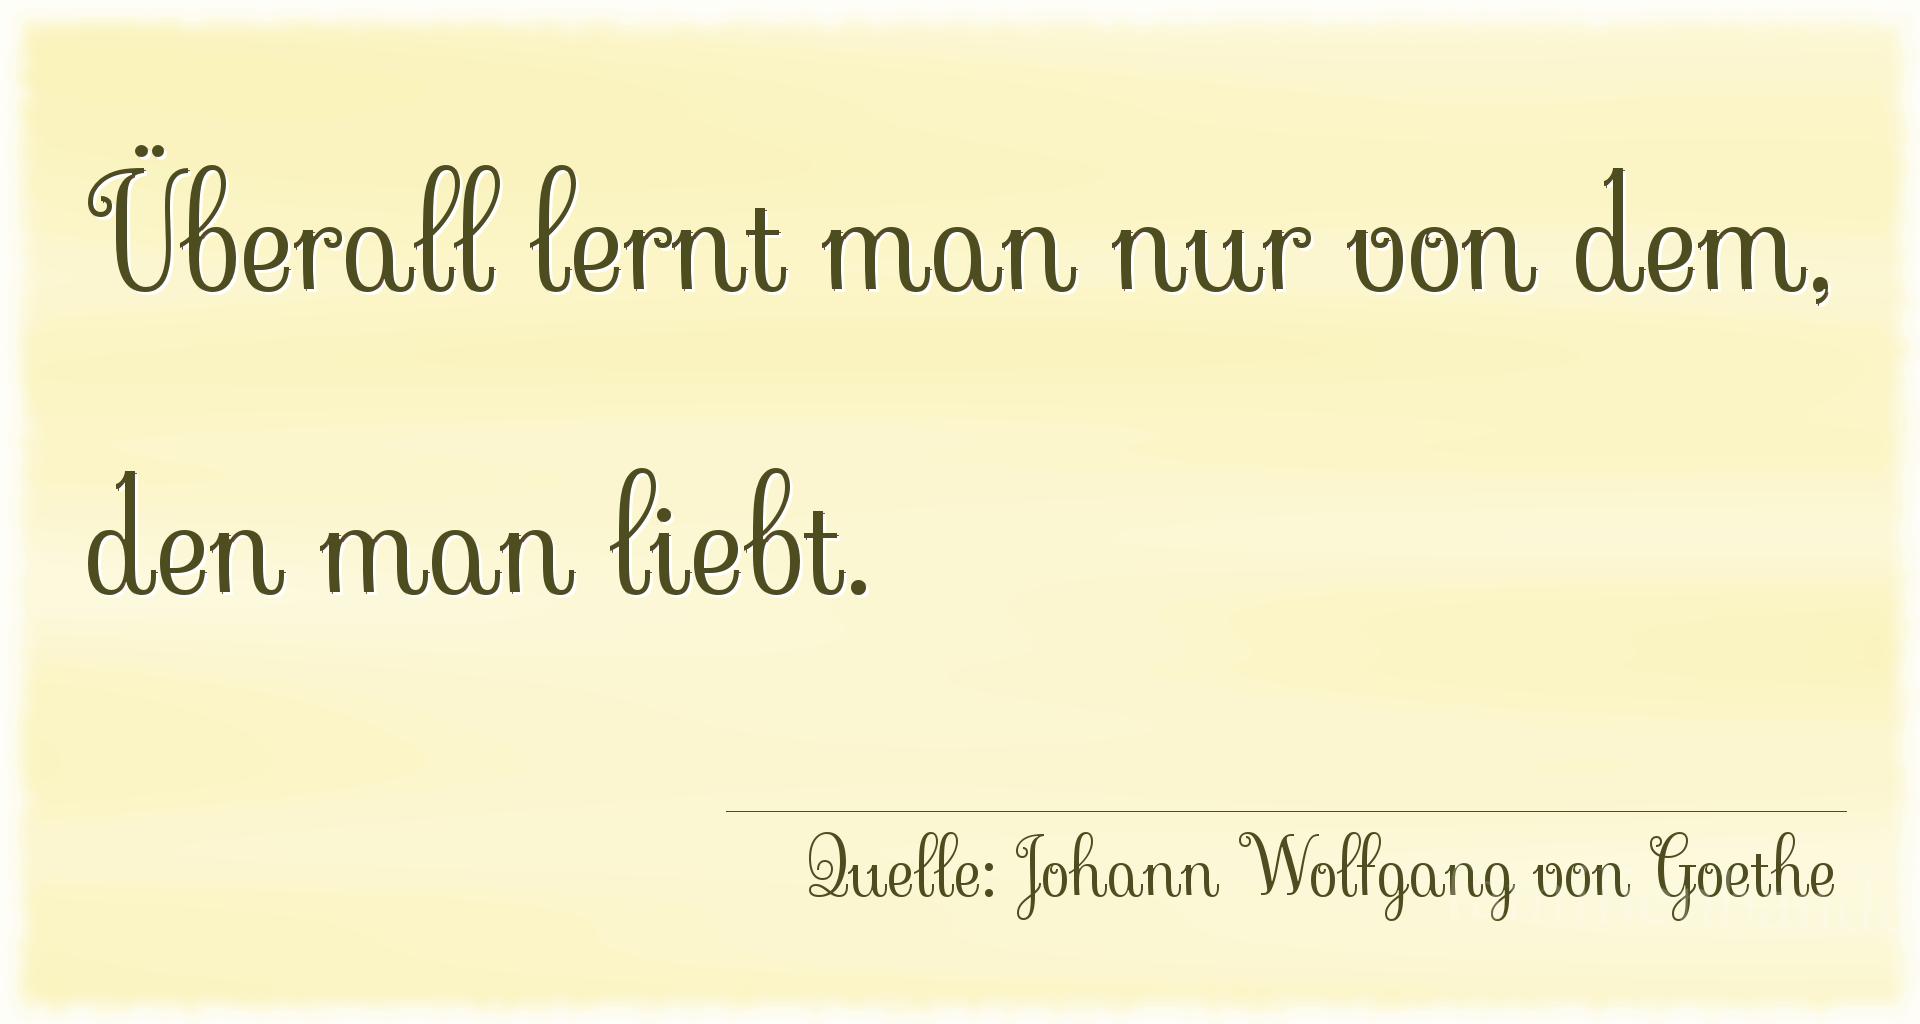 Familienspruch Nr. 360, Quelle Johann Wolfgang von Goethe